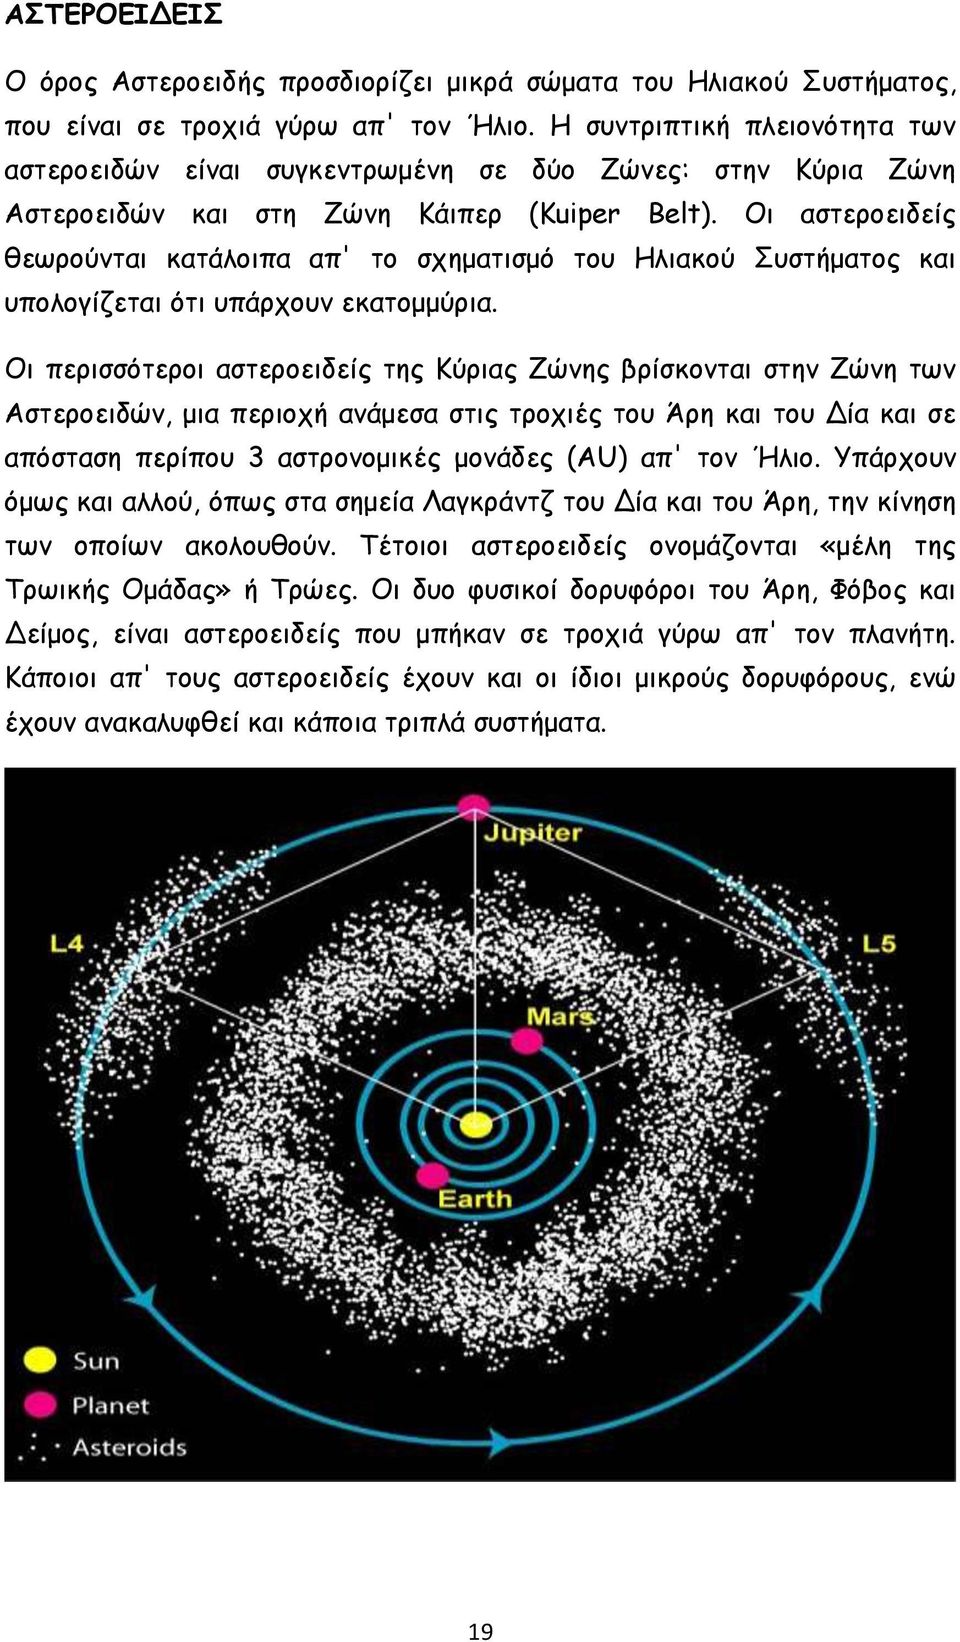 Οι αστεροειδείς θεωρούνται κατάλοιπα απ' το σχηματισμό του Ηλιακού Συστήματος και υπολογίζεται ότι υπάρχουν εκατομμύρια.